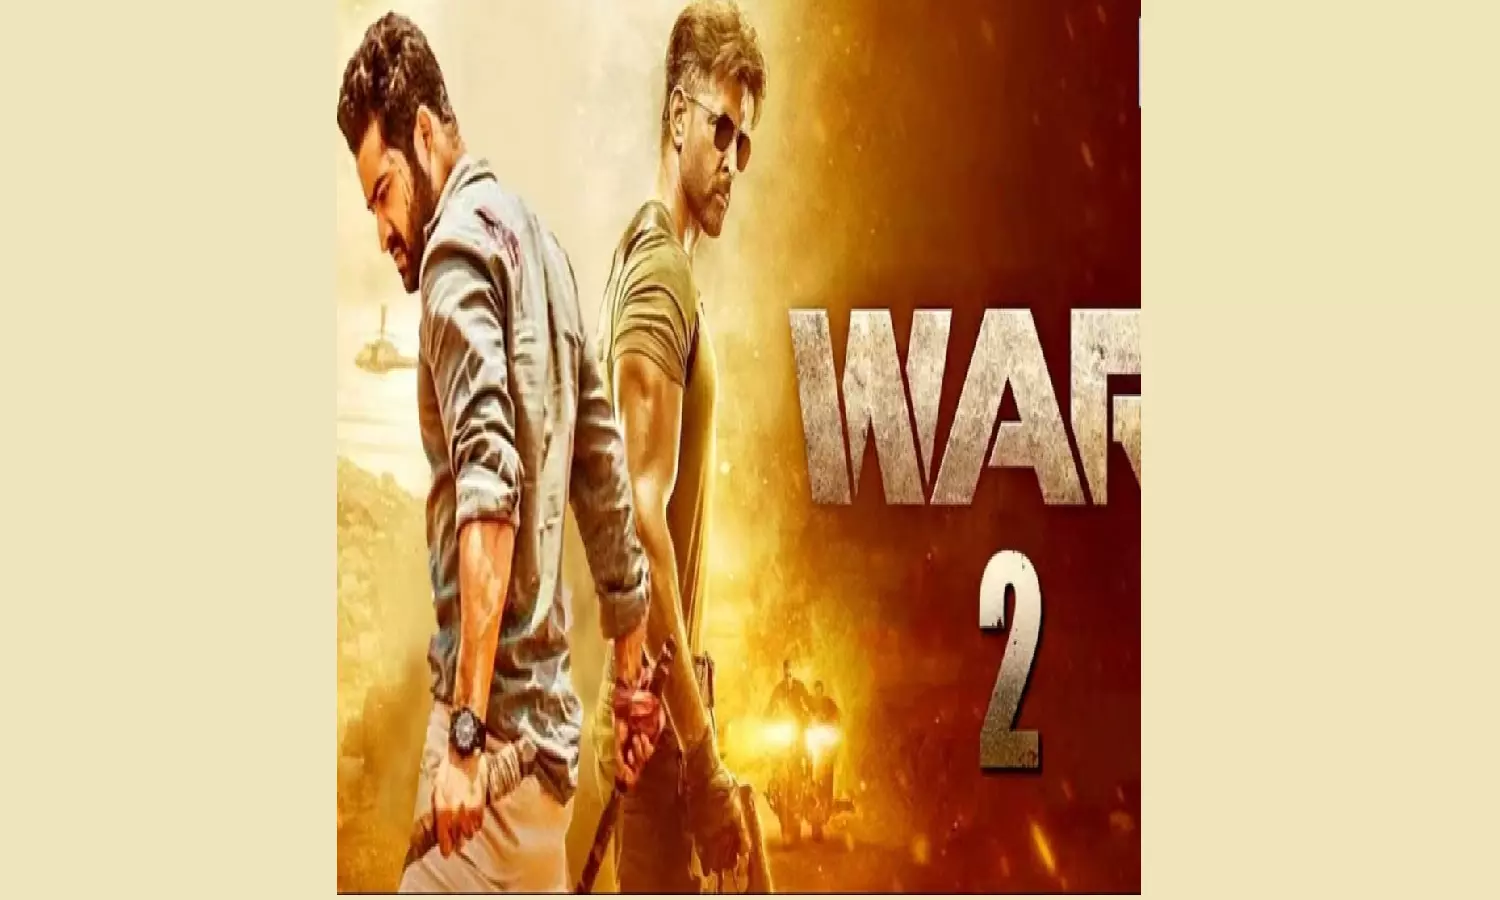 War 2 Cast: वार 2 में ऋतिक के साथ जूनियर एनटीआर निभाएंगे, एक भारतीय एजेंट का किरदार